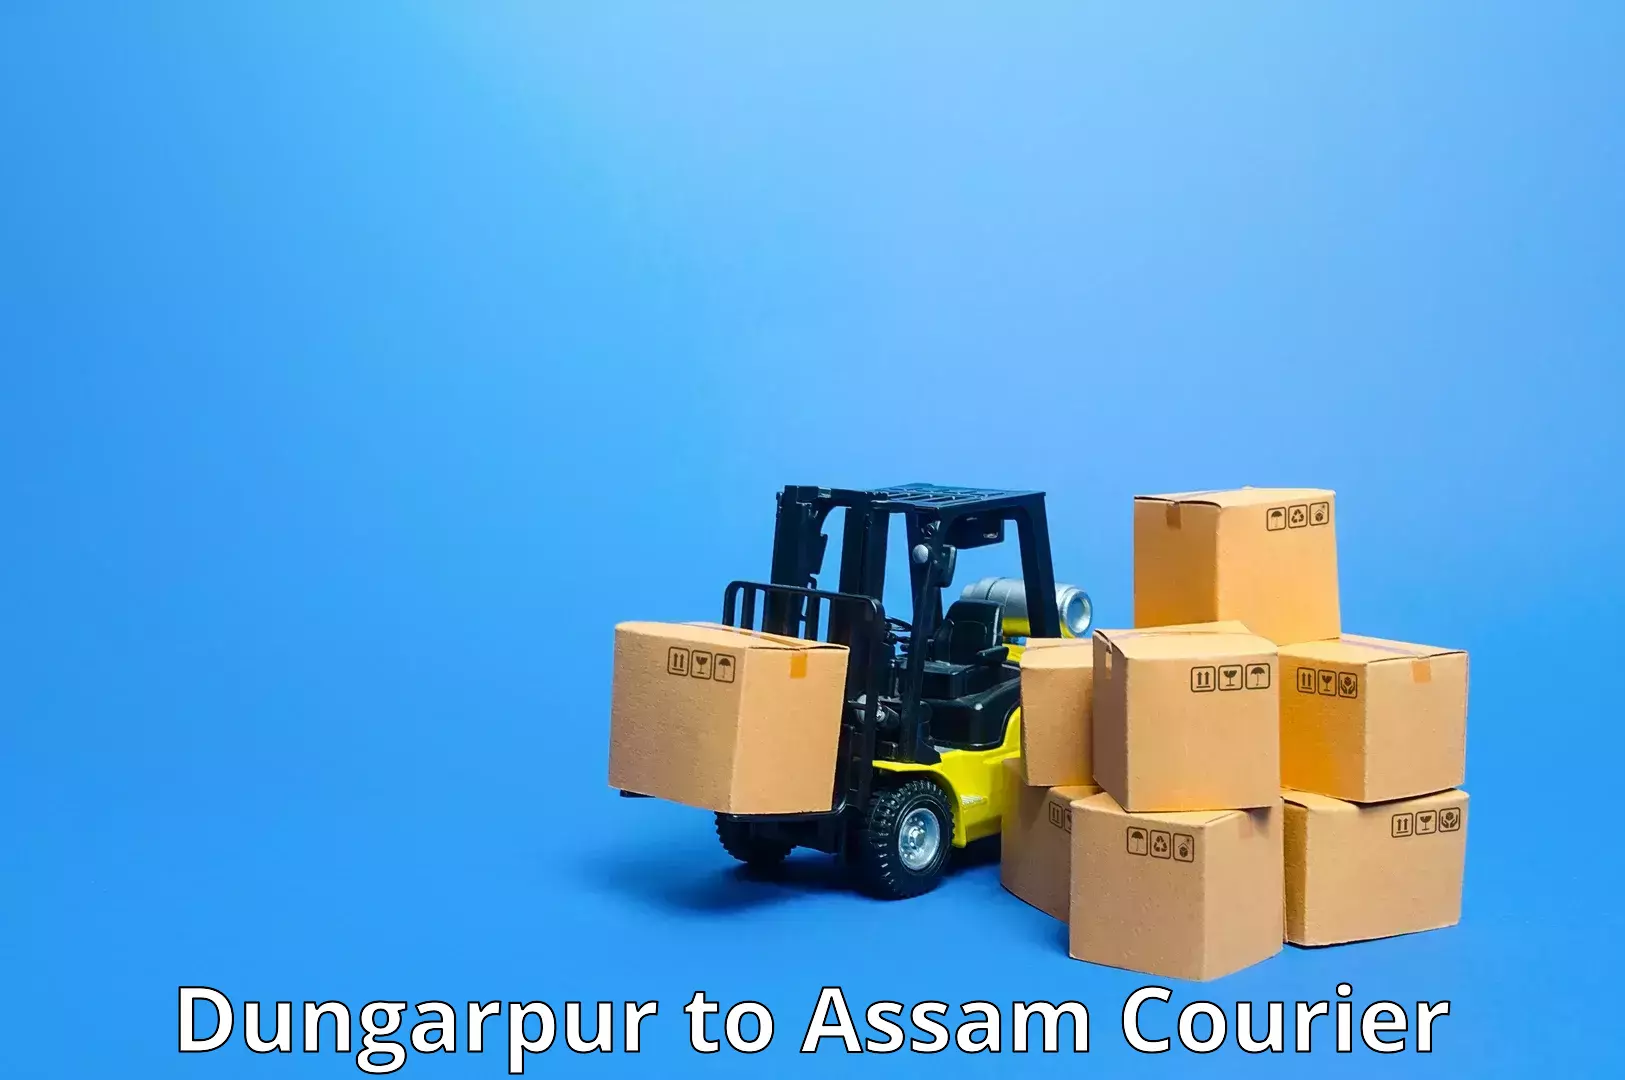 Customizable shipping options Dungarpur to Jamugurihat